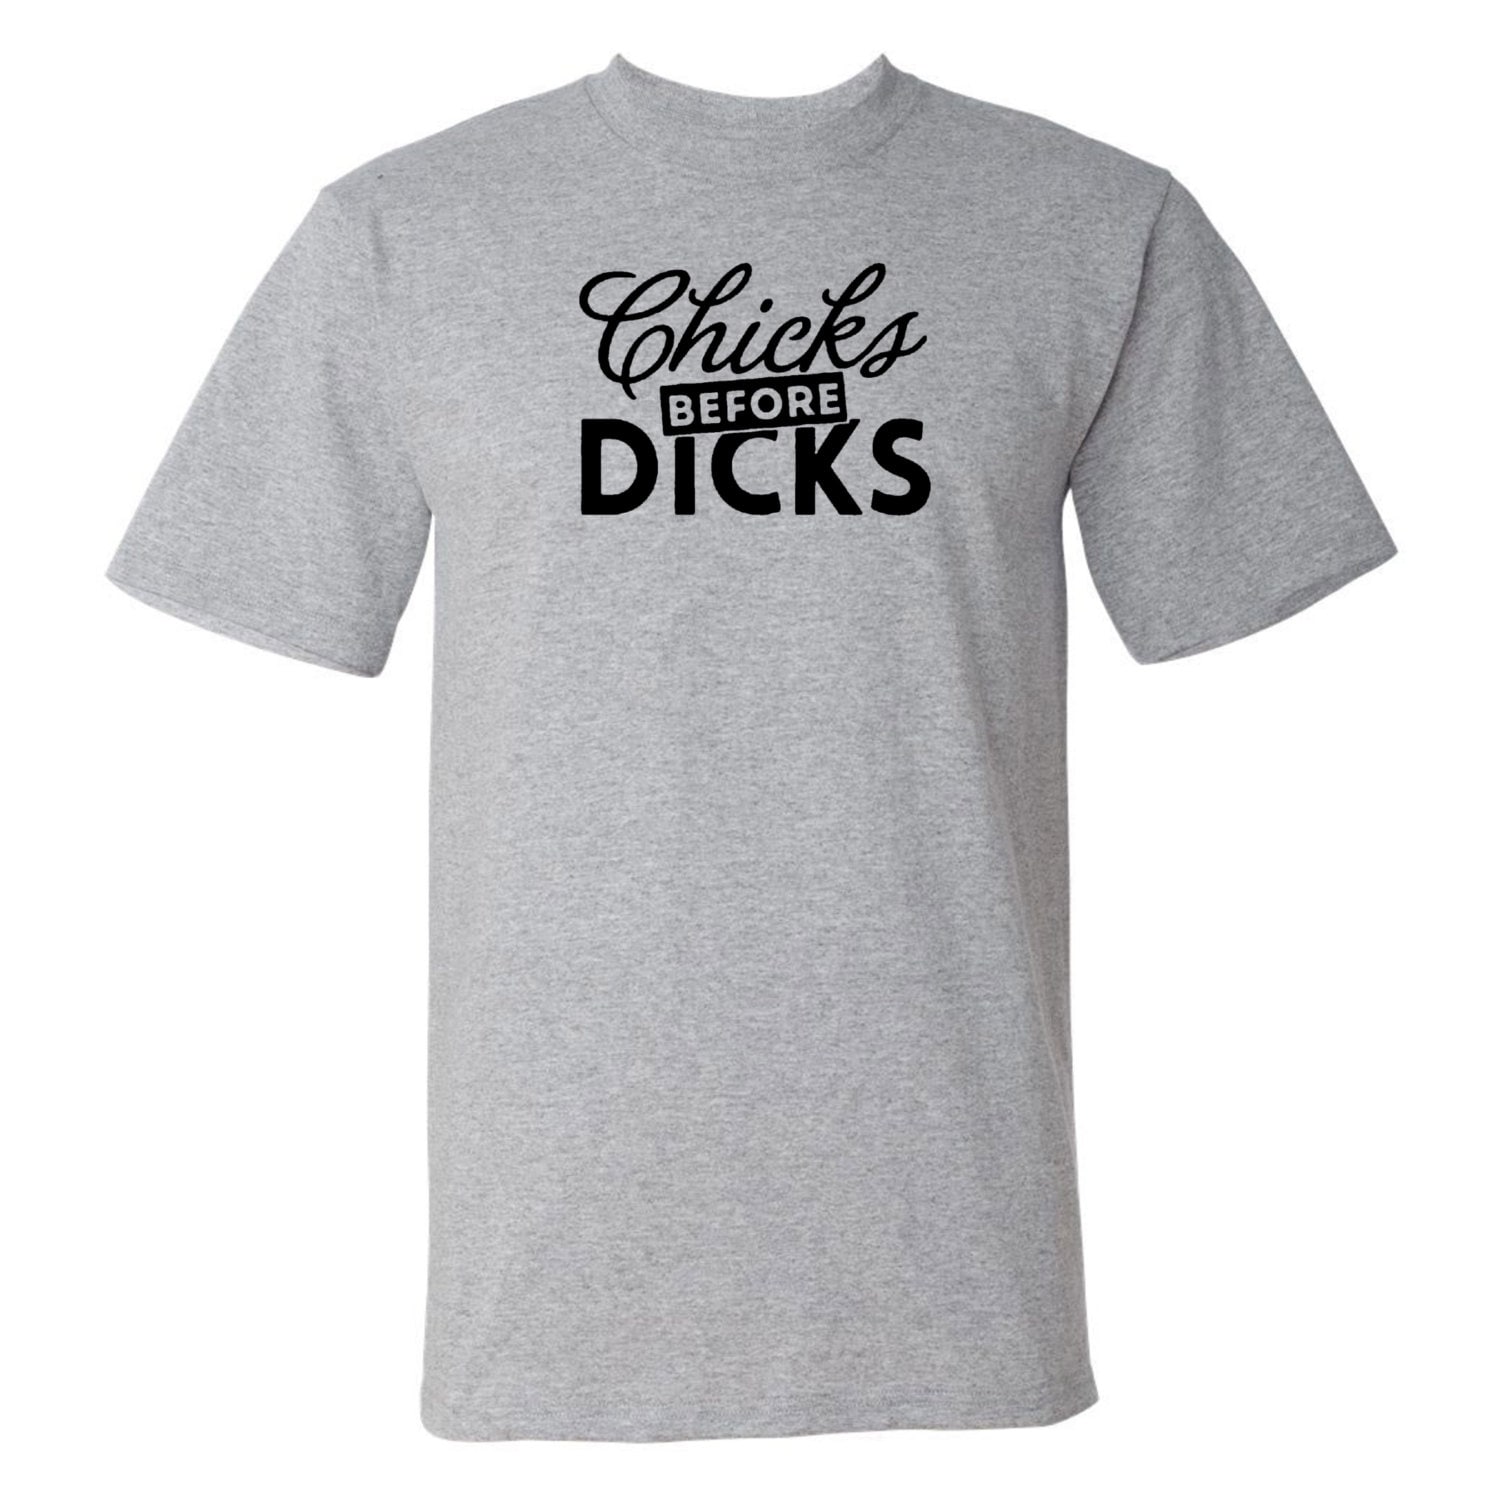 Chicks Before Dicks Funny Shirt - Etsy UK